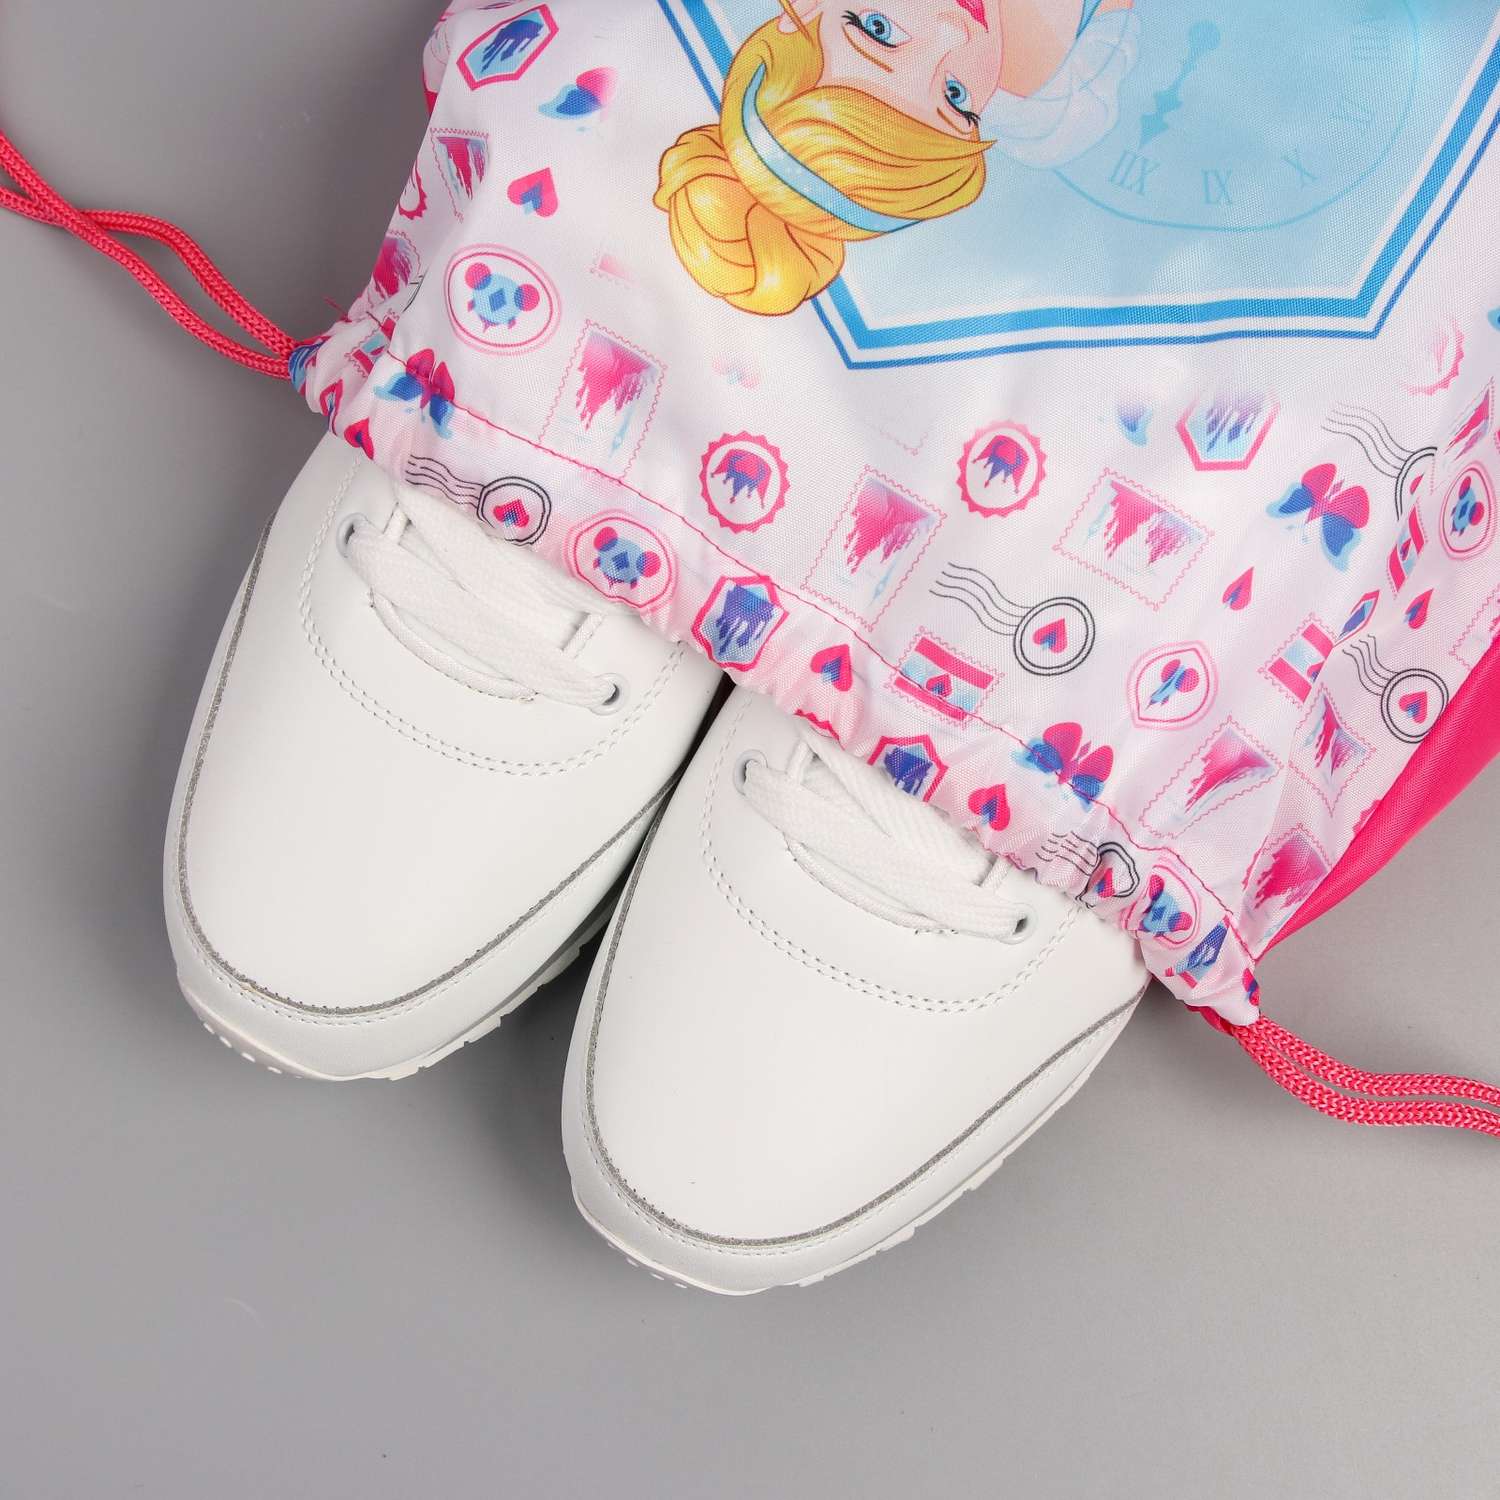 Мешок для обуви Disney Золушка Принцессы - фото 2